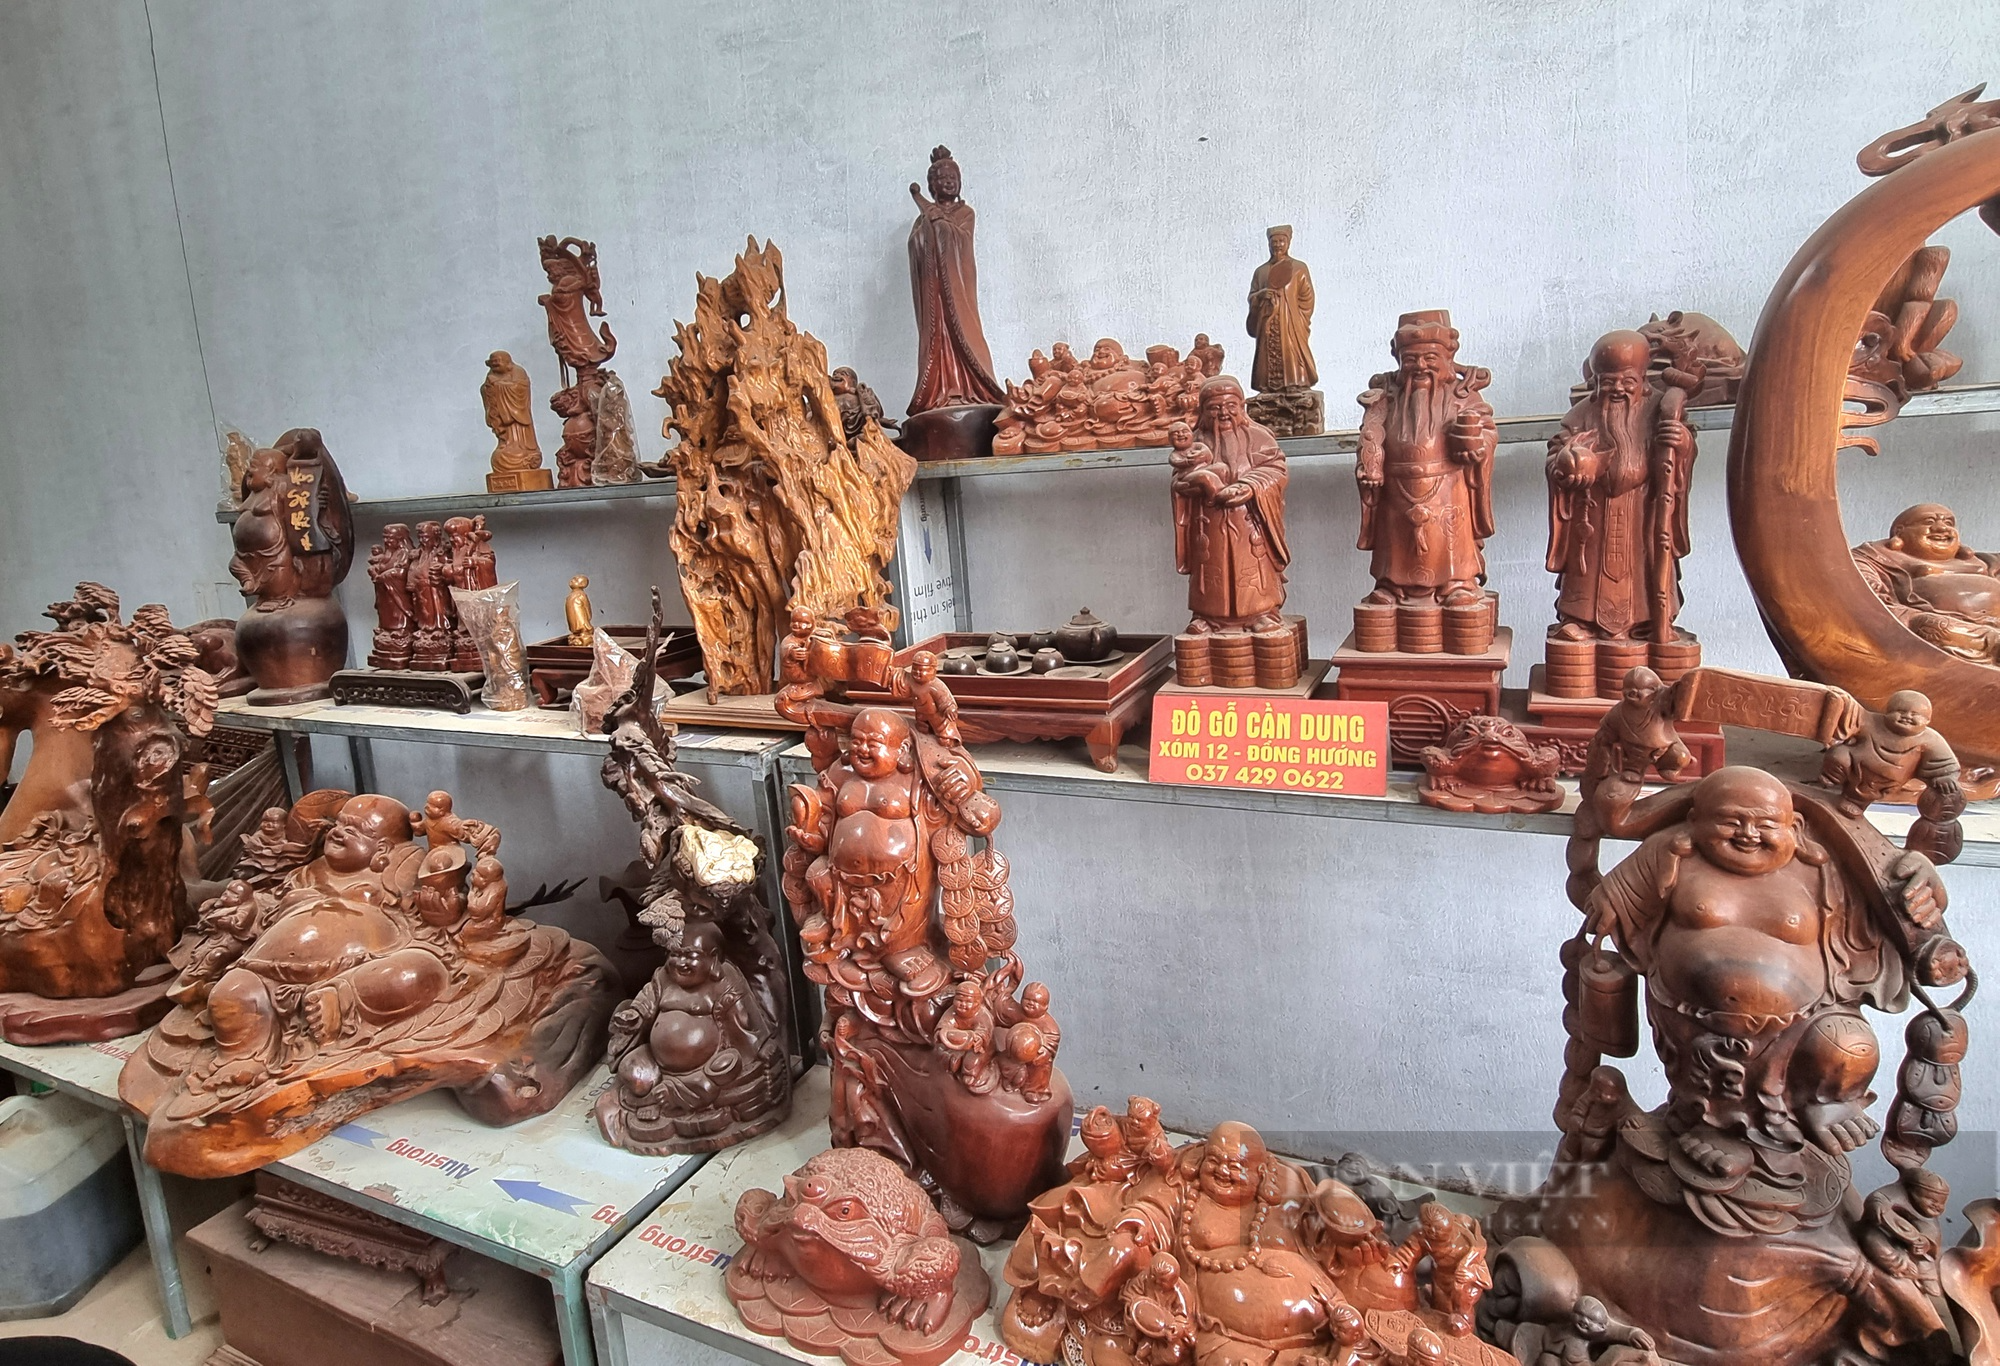 9X Ninh Bình nổi tiếng với nghề điêu khắc gỗ - Ảnh 4.